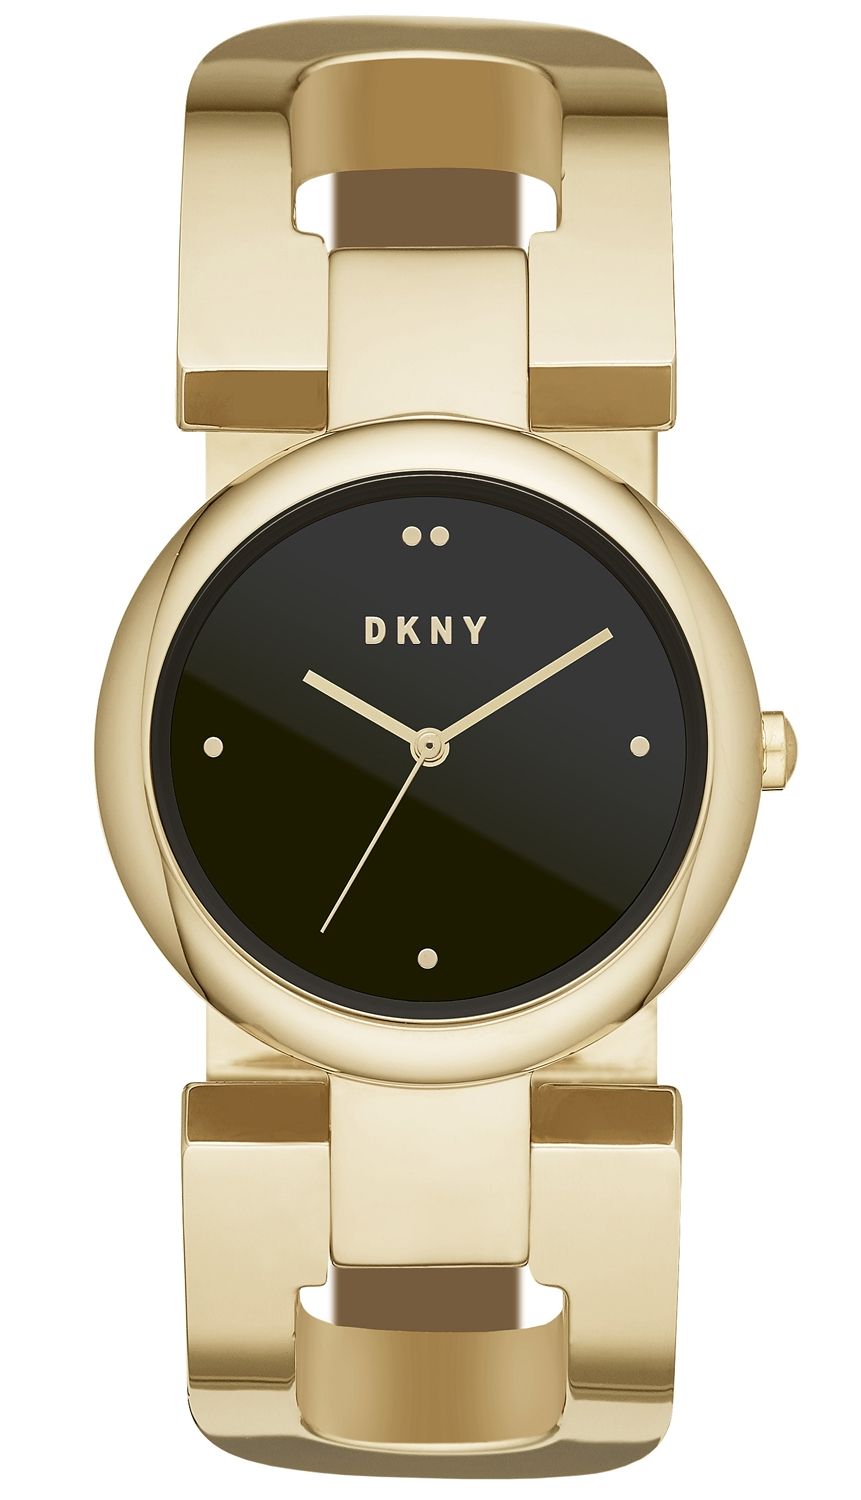 DKNY| Køb dit nye DKNY ur til faste lave priser [Kun 1 dags